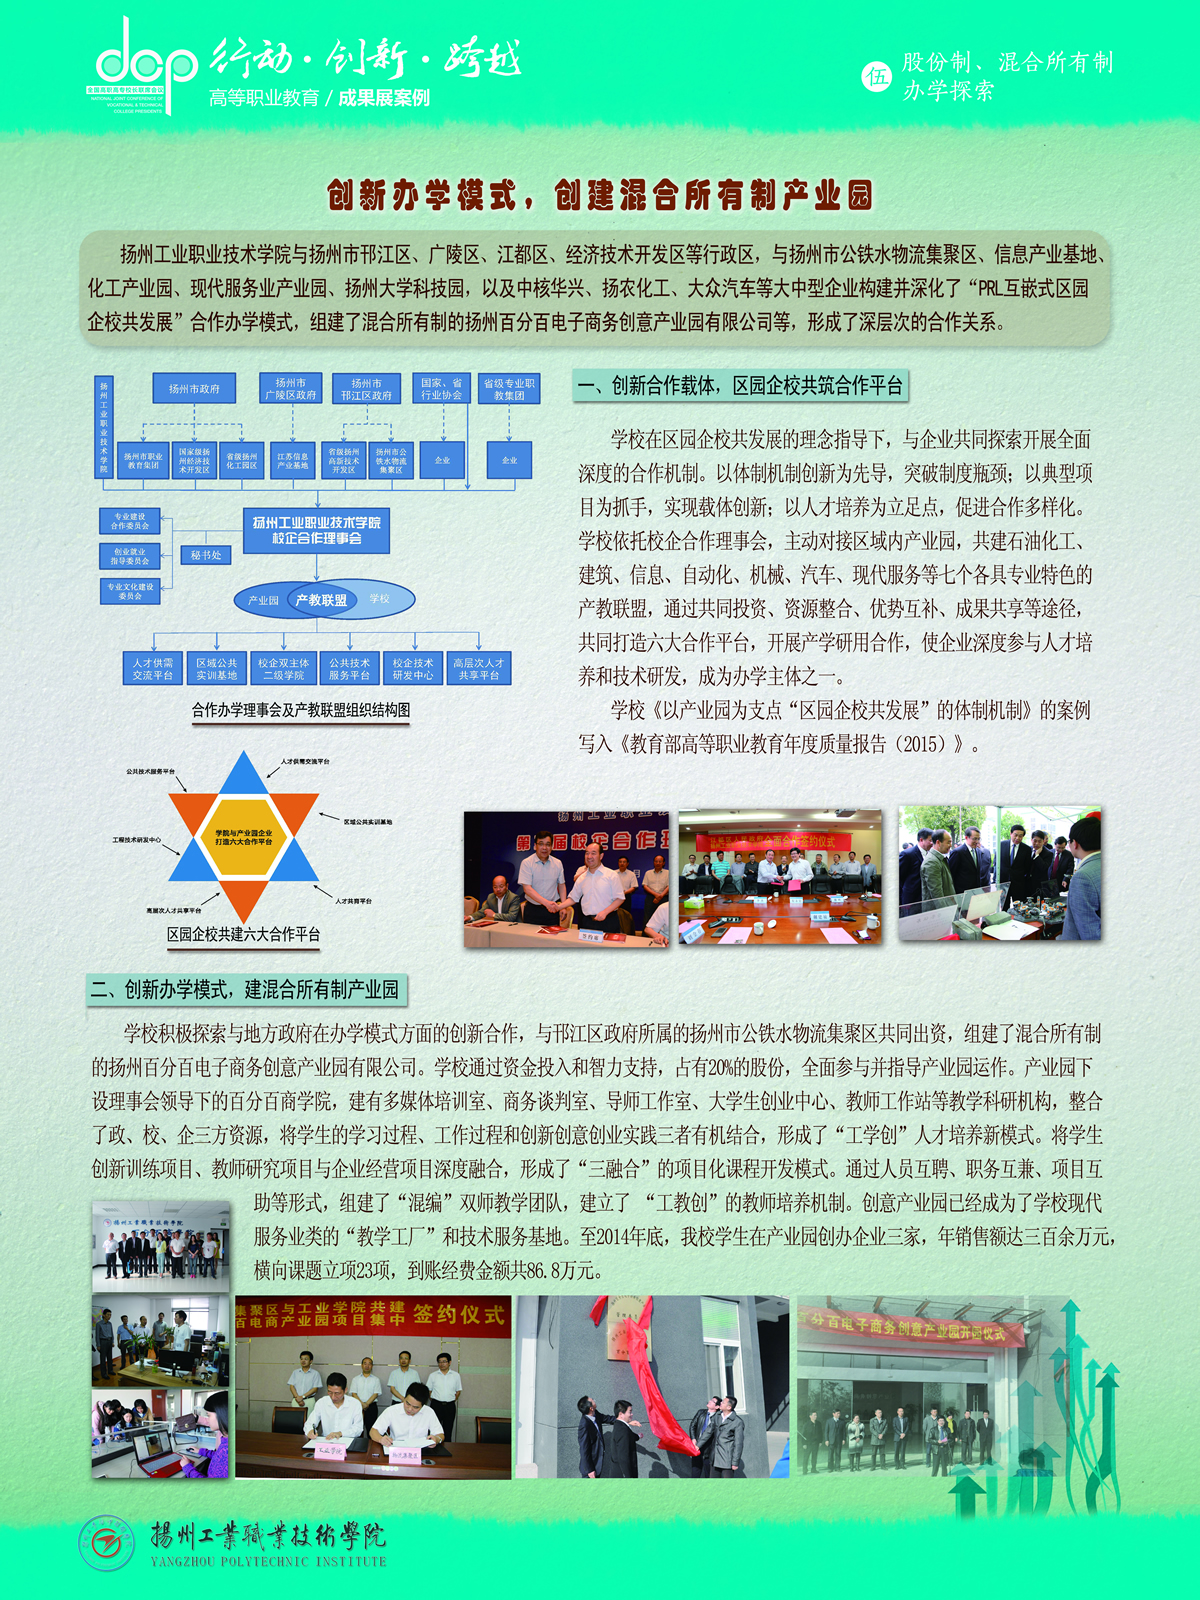 扬州工业职业技术学院－创新办学模式，创建混合所有制产业园（股....jpg